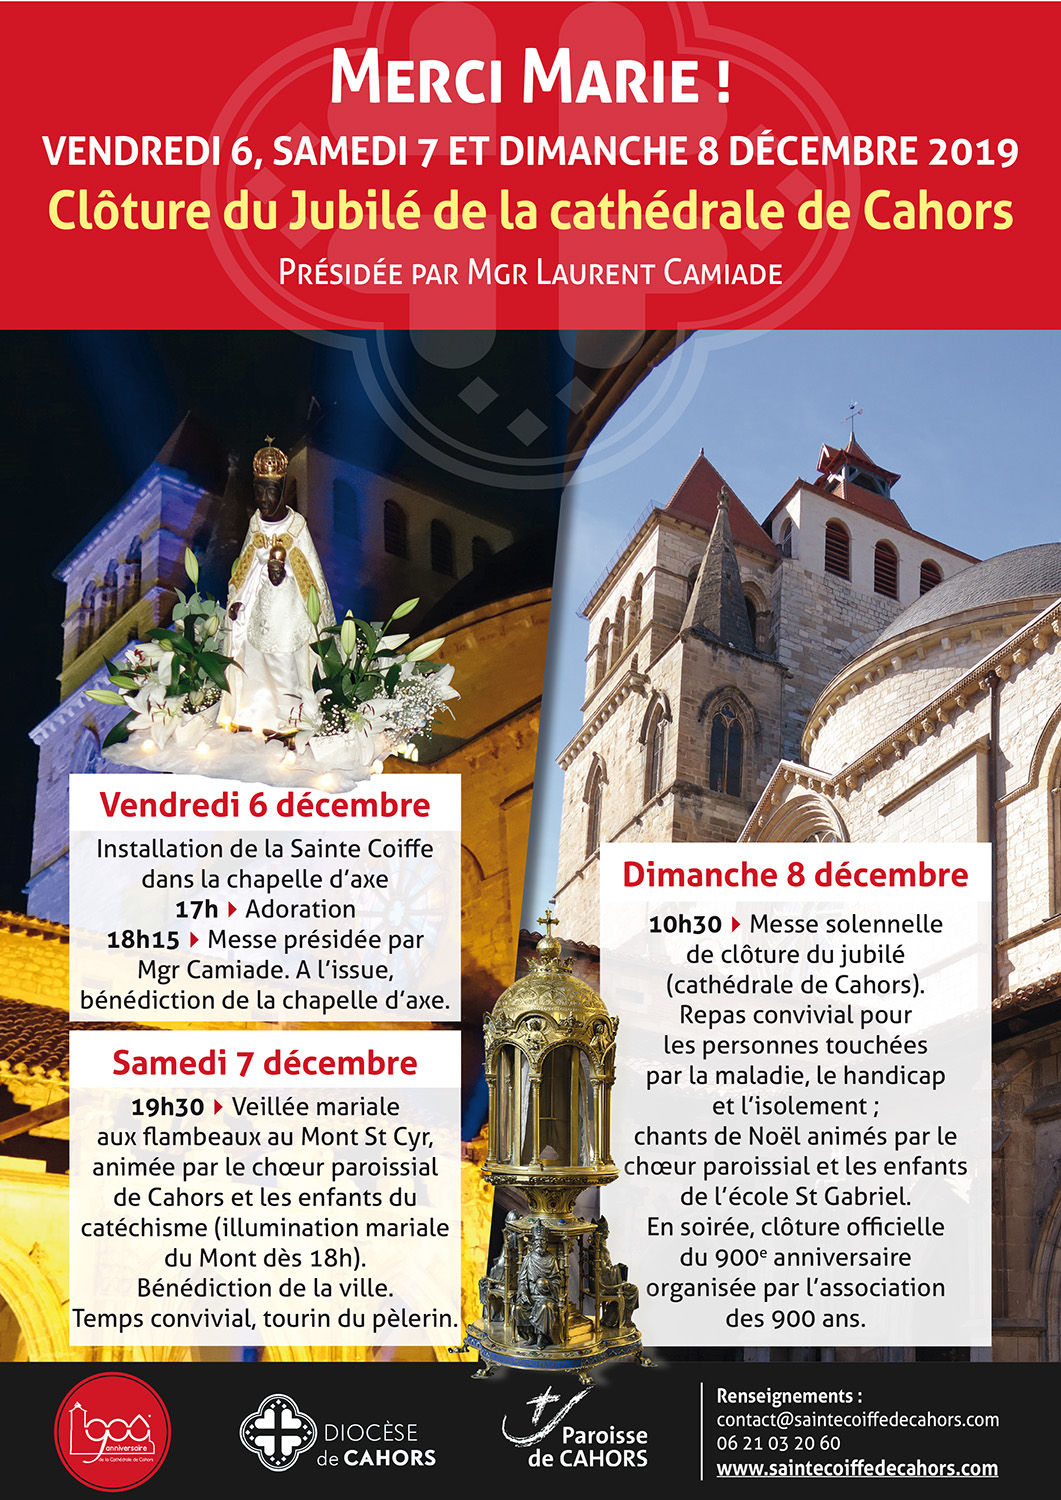 Triduum de clôture du Jubilé de la cathédrale les 6, 7 & 8 décembre 2019 à Cahors (46)